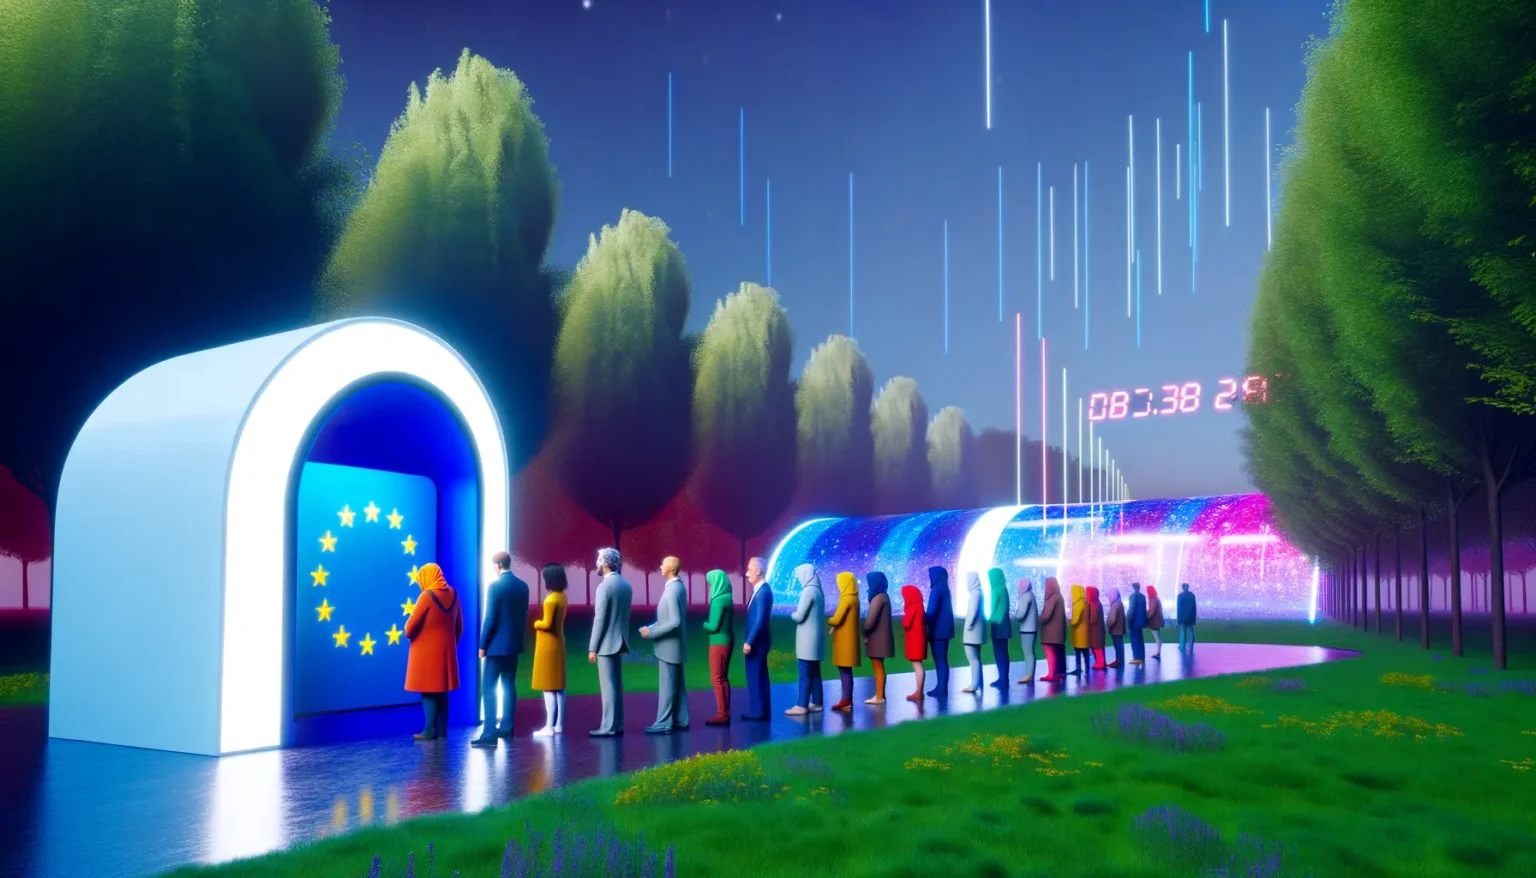 Eine Schlange von Menschen in bunten Kleidern wartet darauf, durch ein futuristisches Portal zu gehen, das mit EU-Sternen verziert ist, vor einem Hintergrund aus digitalen Bäumen und einem Sternenregen bei Nacht. Ein digitales Display zeigt "08:38 24°C".